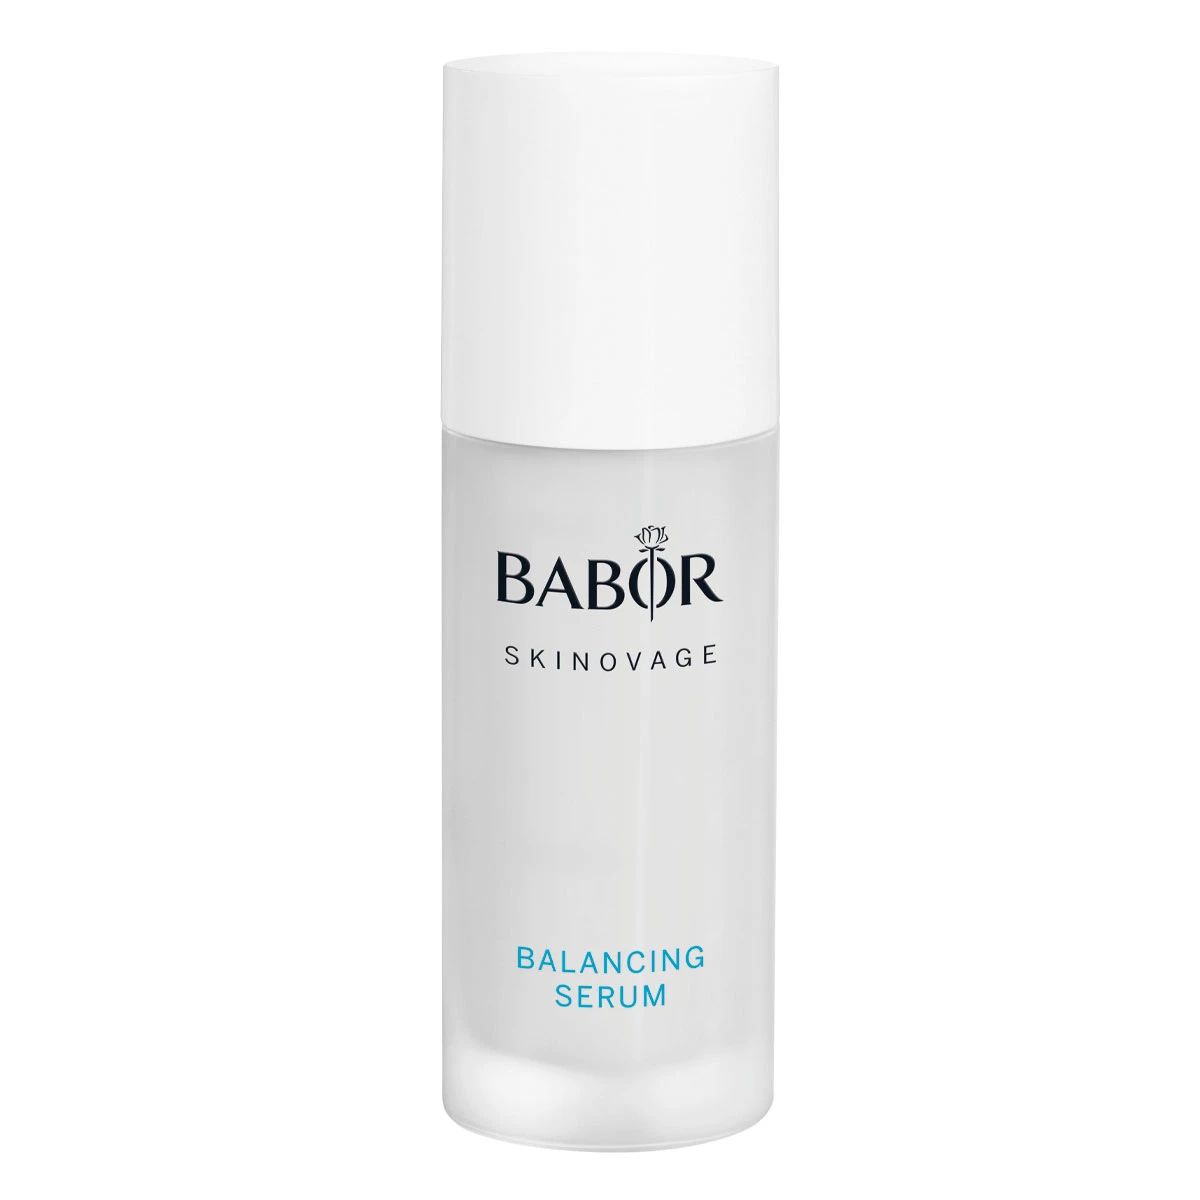 Сыворотка BABOR Skinovage Balancing Serum для комбинированной кожи 30 мл сыворотка babor skinovage увлажняющая 30 мл